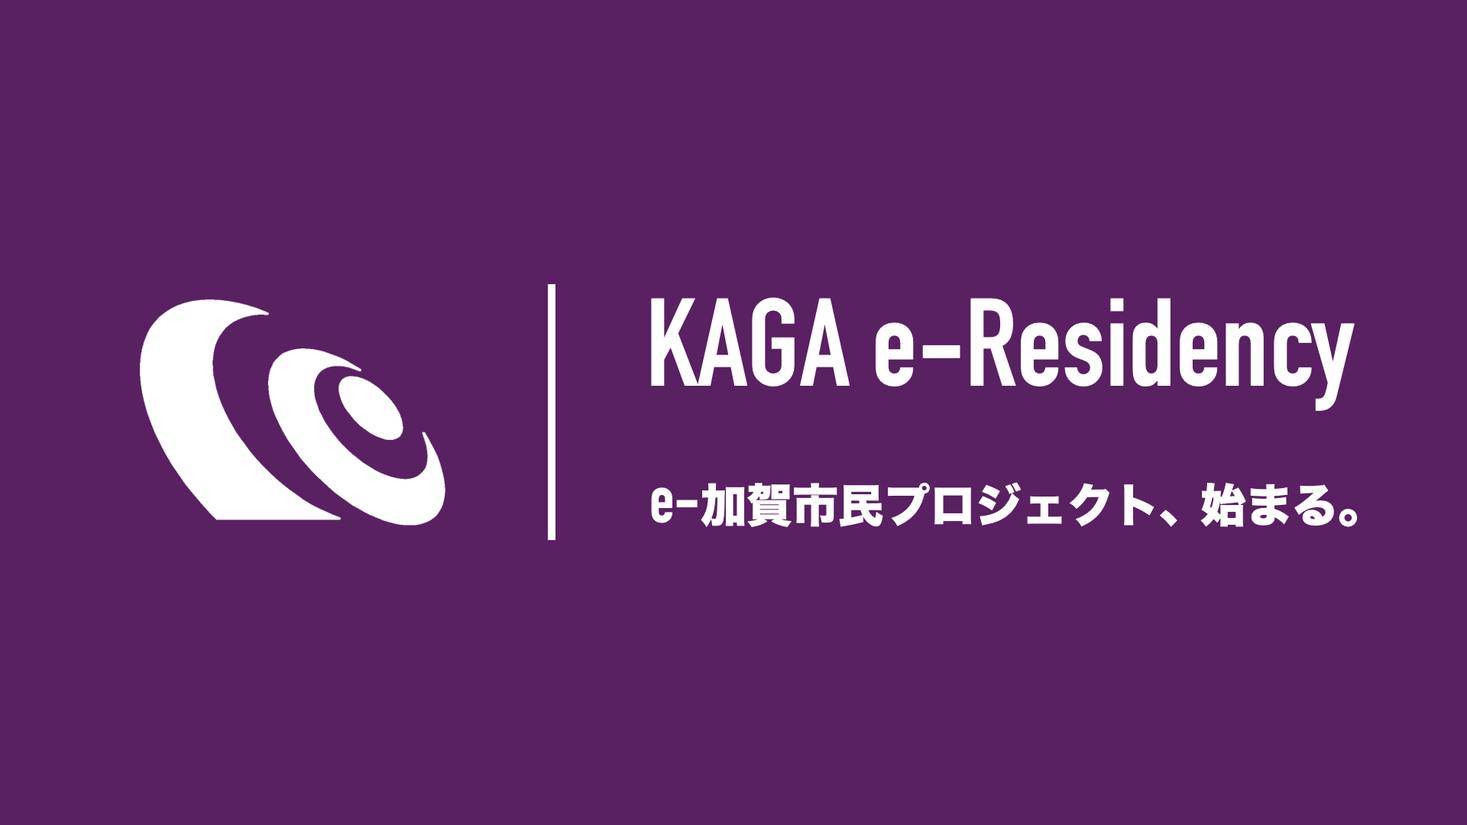 【石川県加賀市】日本初・e-加賀市民制度（加賀版e-Residency）の提供へ